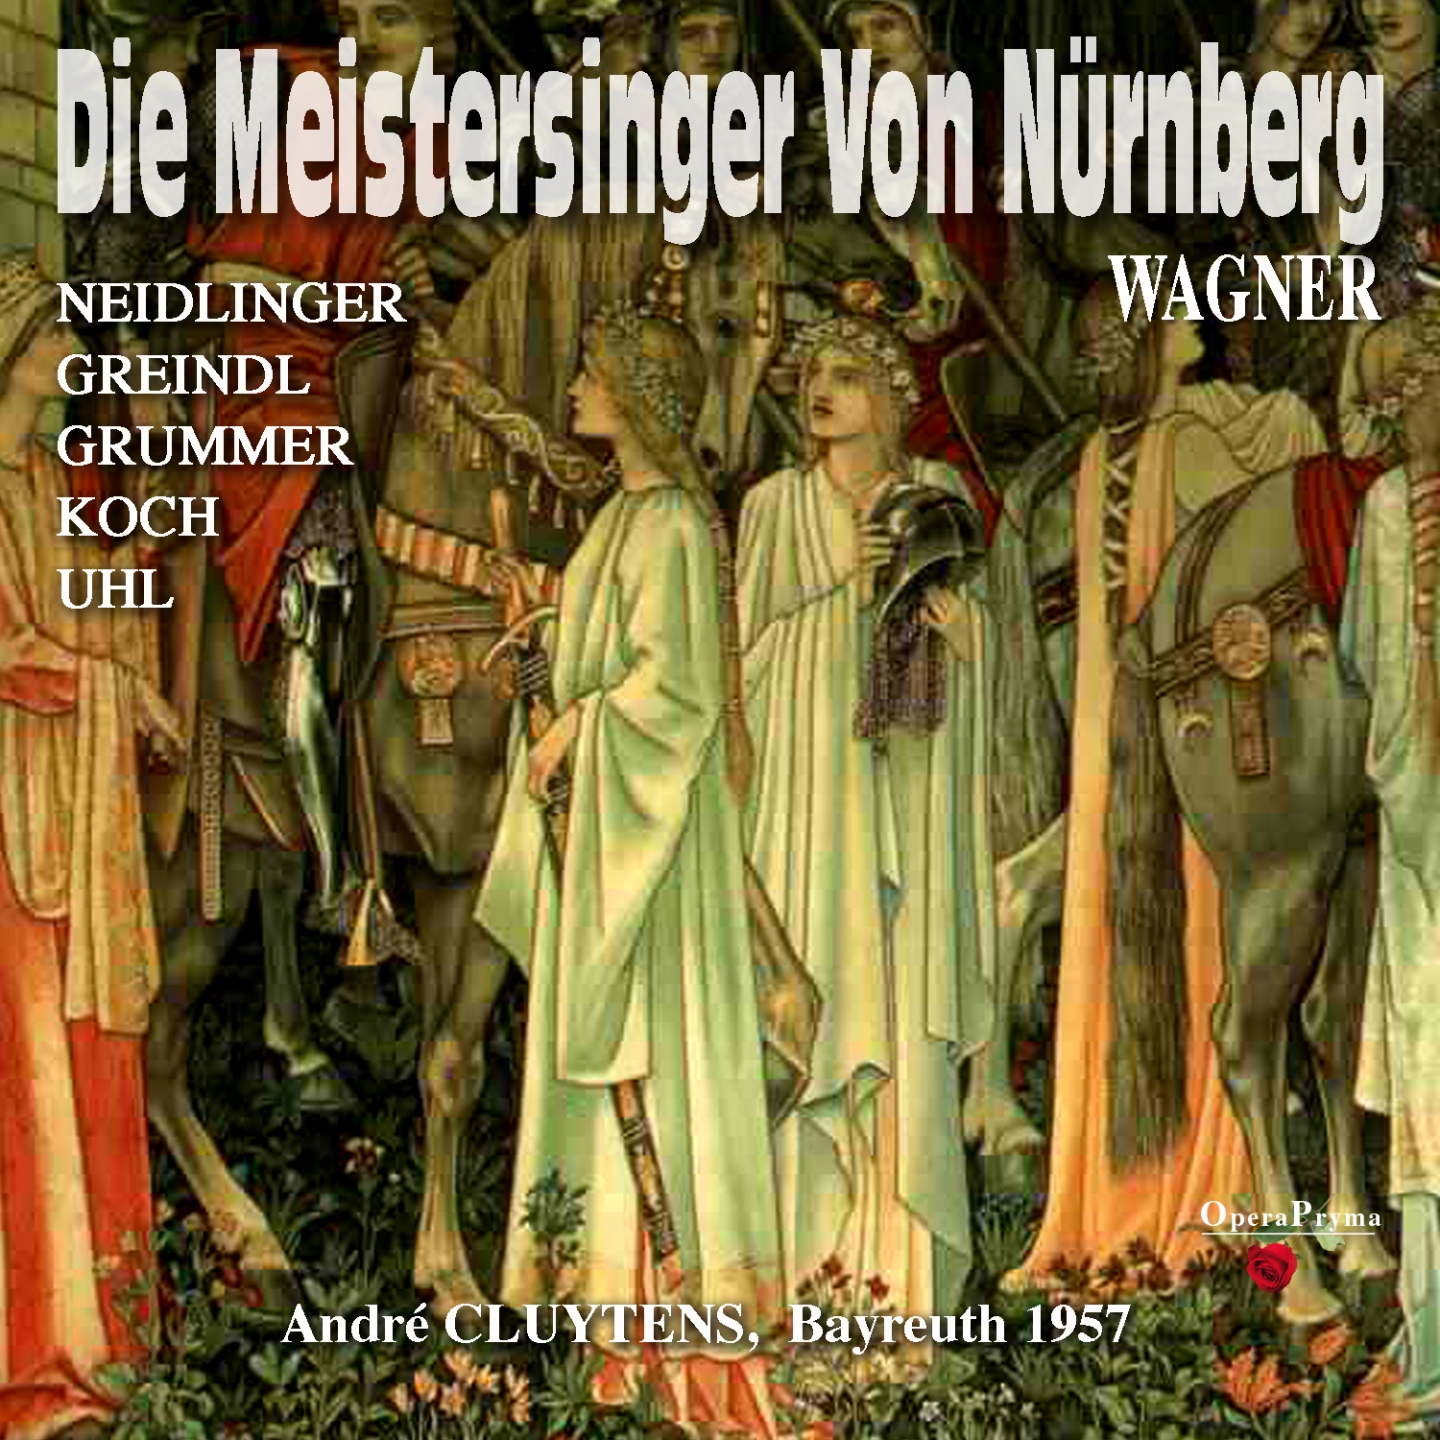 Die Meistersinger von Nü rnberg, Act I: " Fanget an! So rief der Lenz in den Wald" Walther von Stolzing